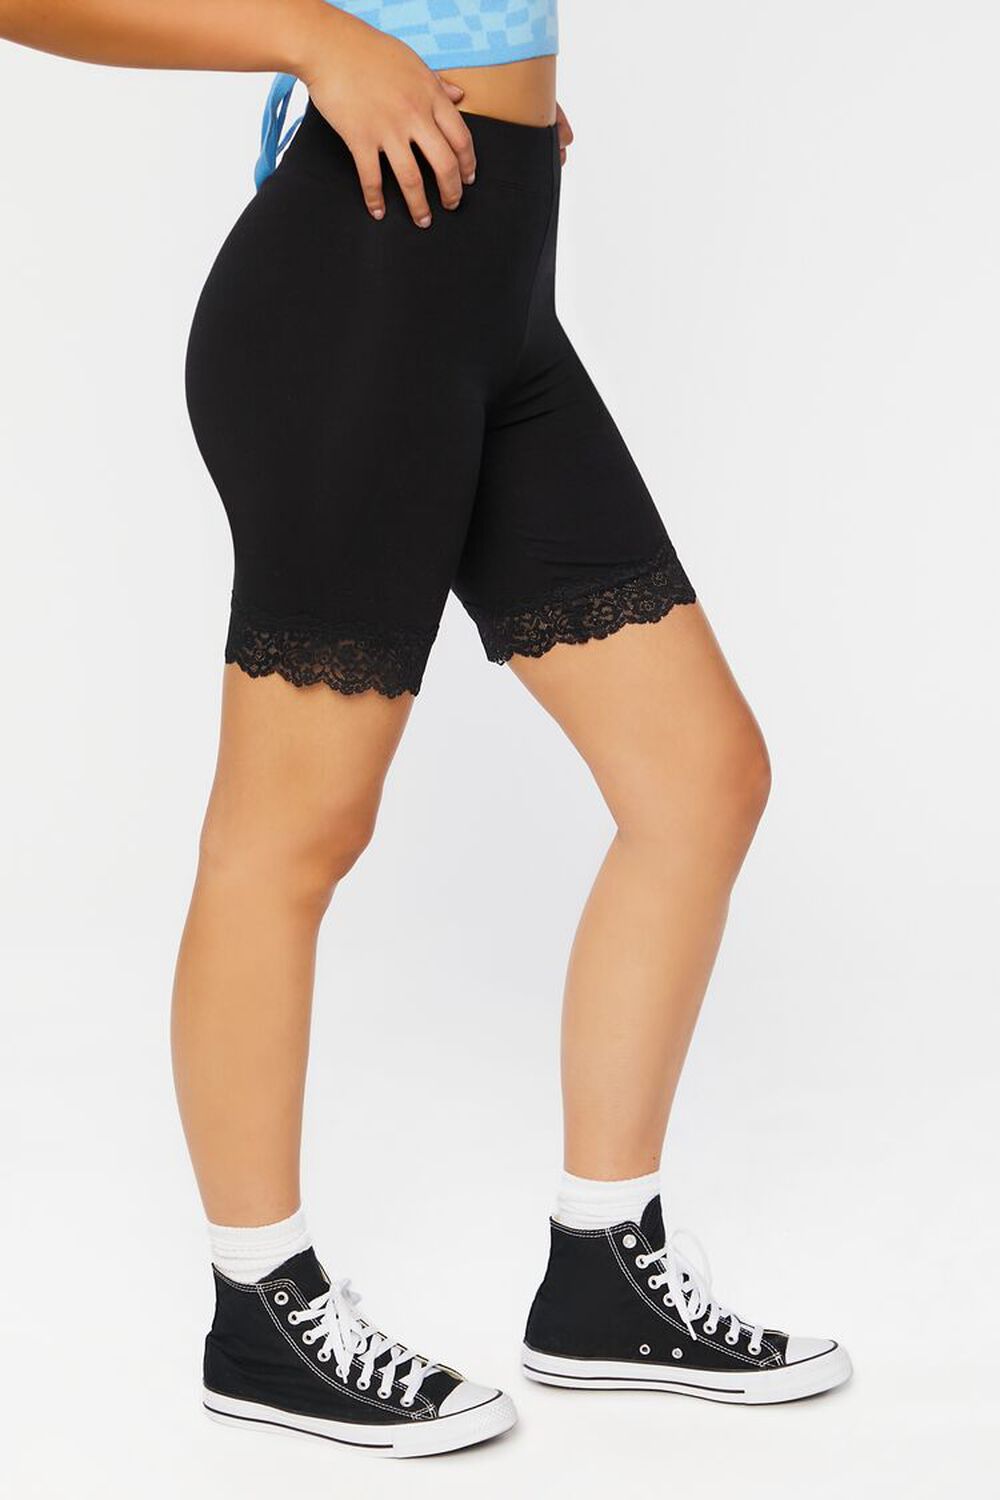 BLACK Lace-Trim Biker Shorts, image 3